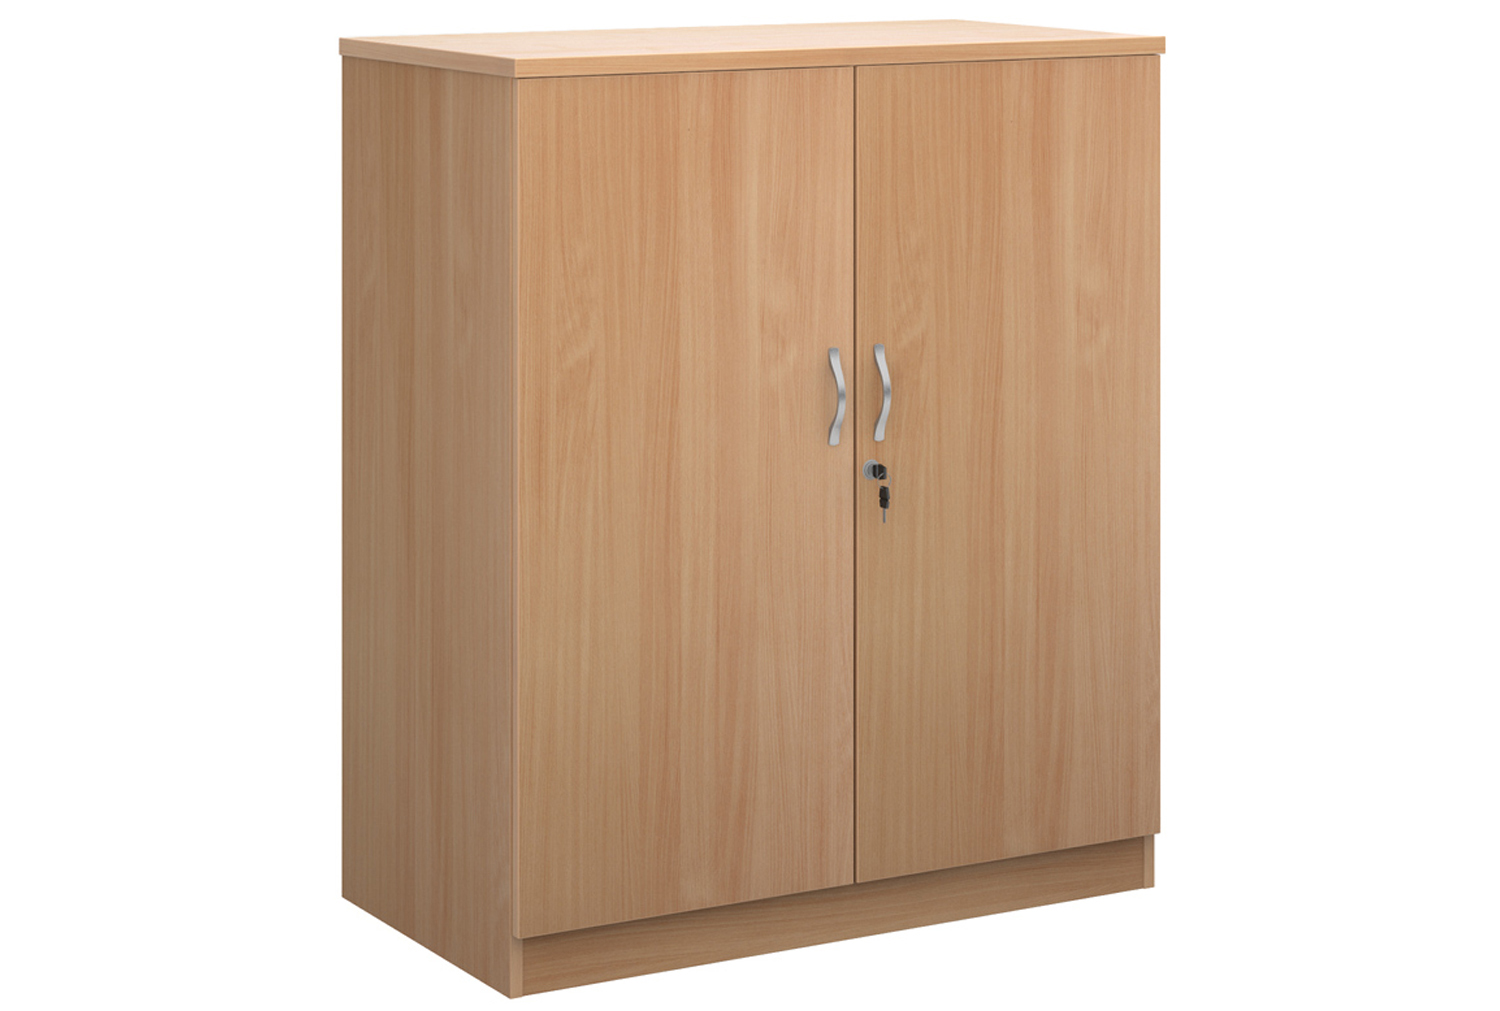 High Capacity Double Door Cupboards, 2 Shelf - 102wx55dx120h (cm), Beech